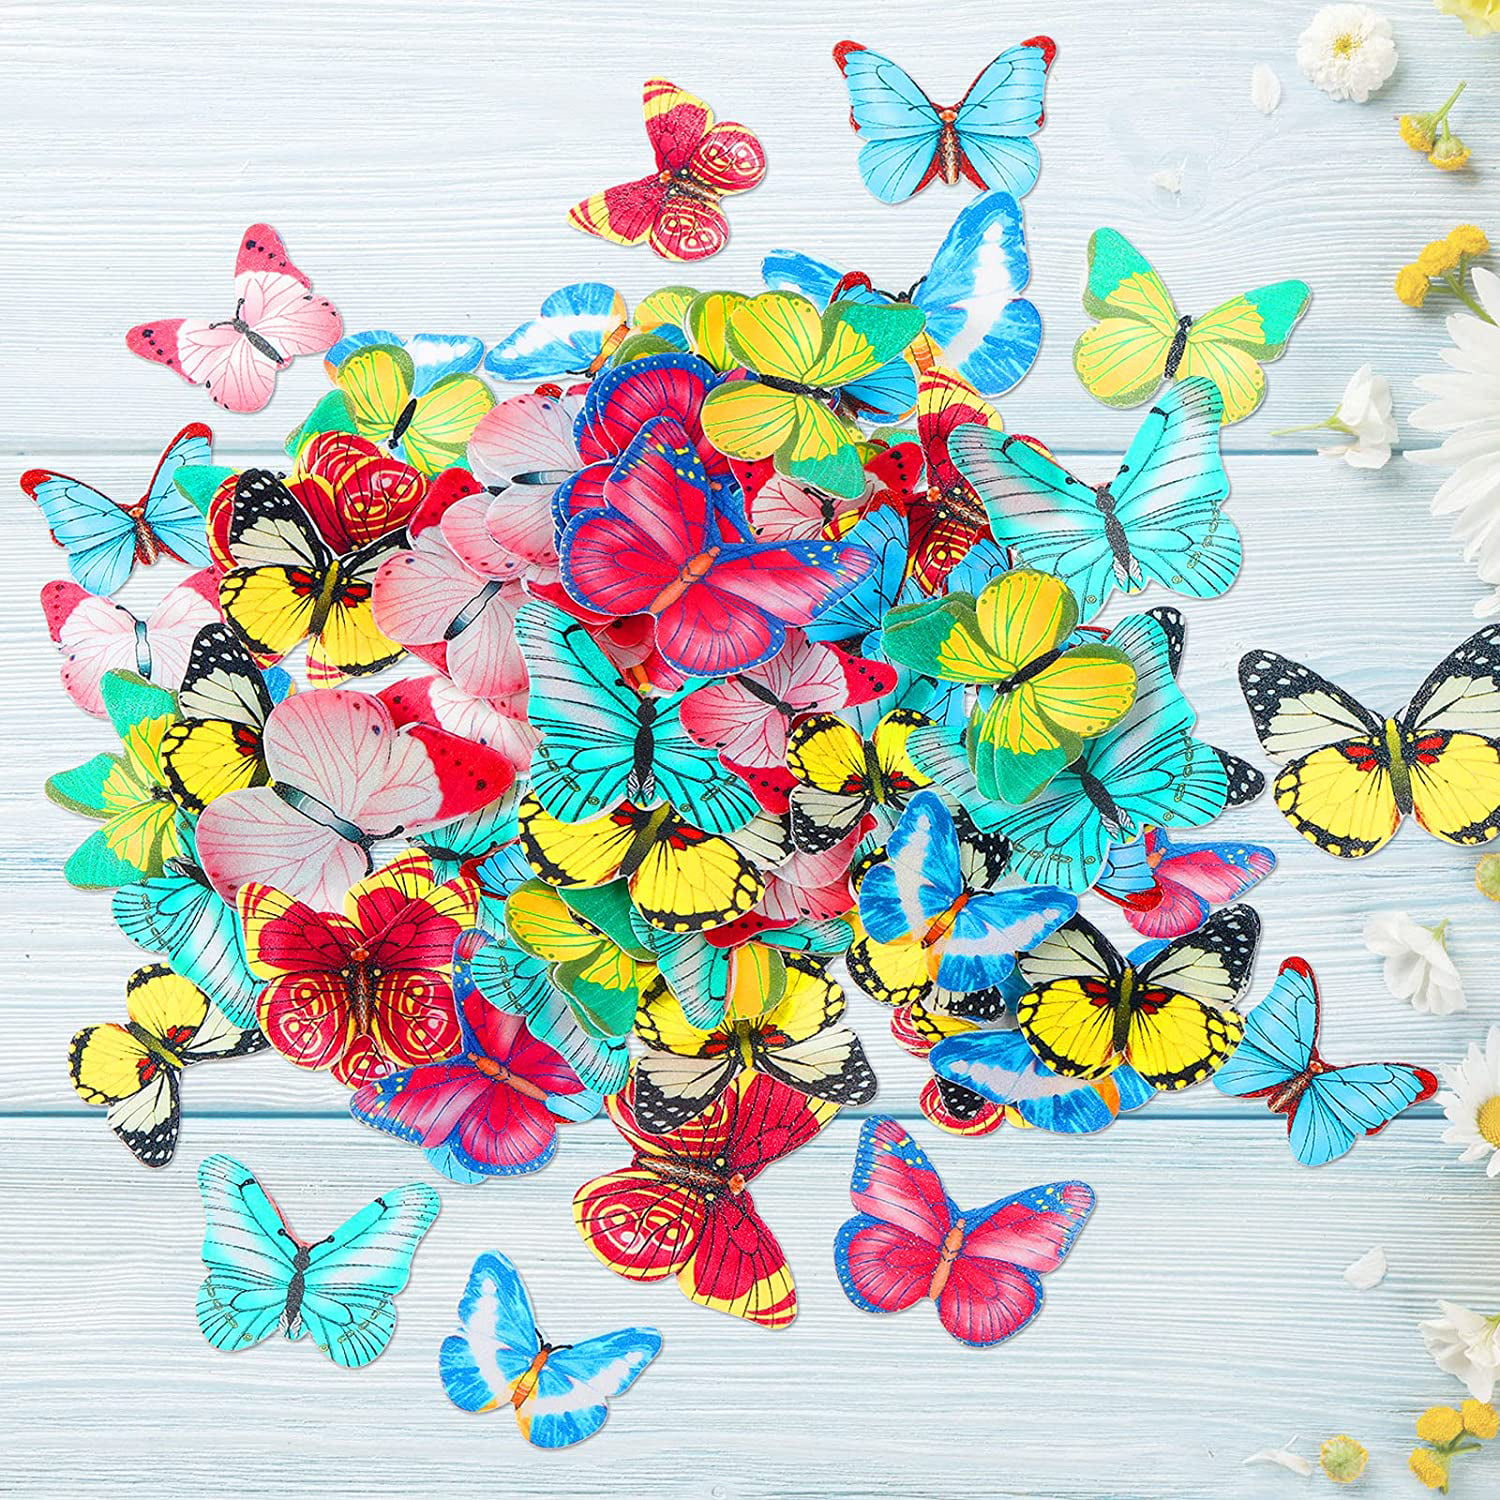 Home Party Wedding Favor Supplies Wedding Festival 3D Artificial Butterflies 